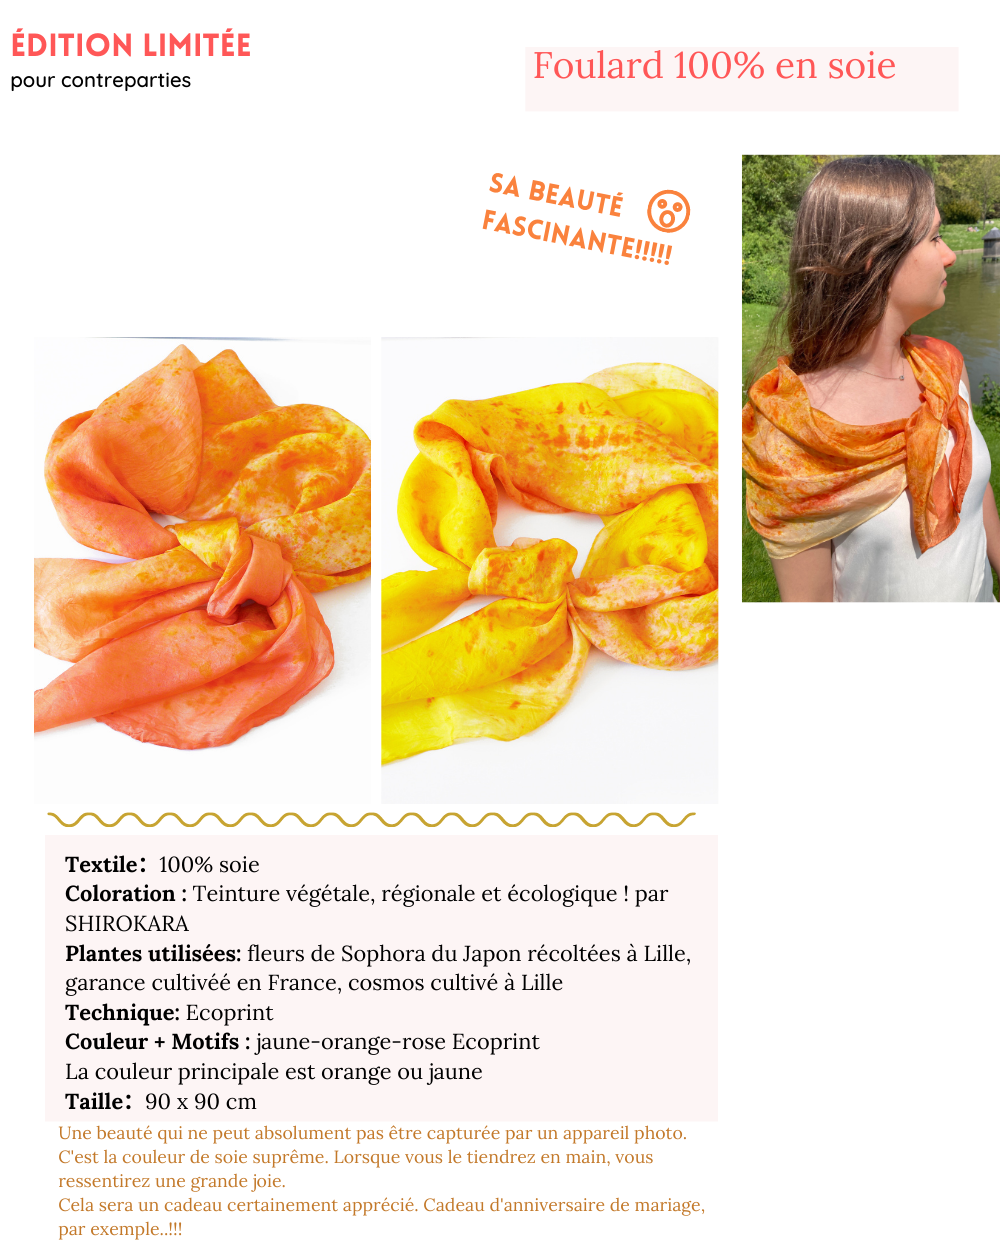 SHIROKARA, marque de produits teints à partir de colorants végétaux par  Machiko SAITO — KissKissBankBank